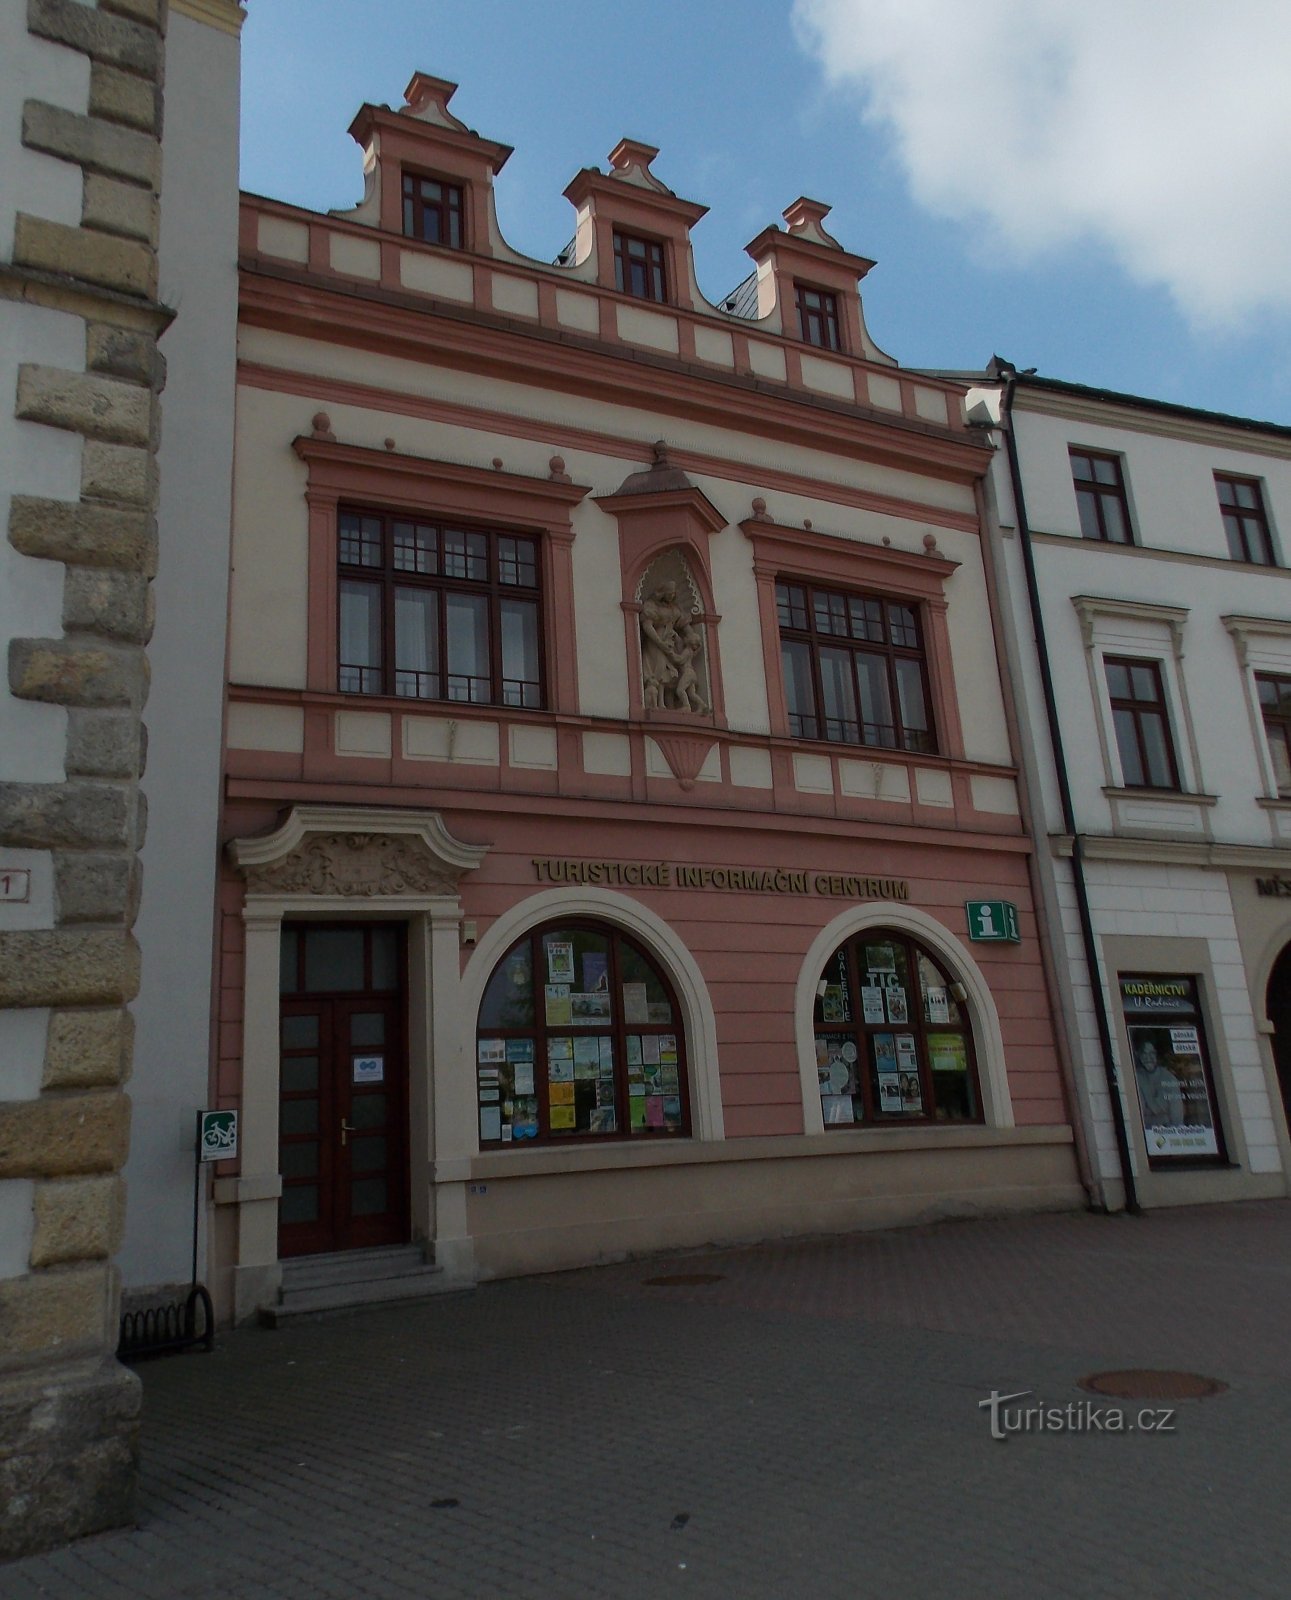 Information center in Vyškov